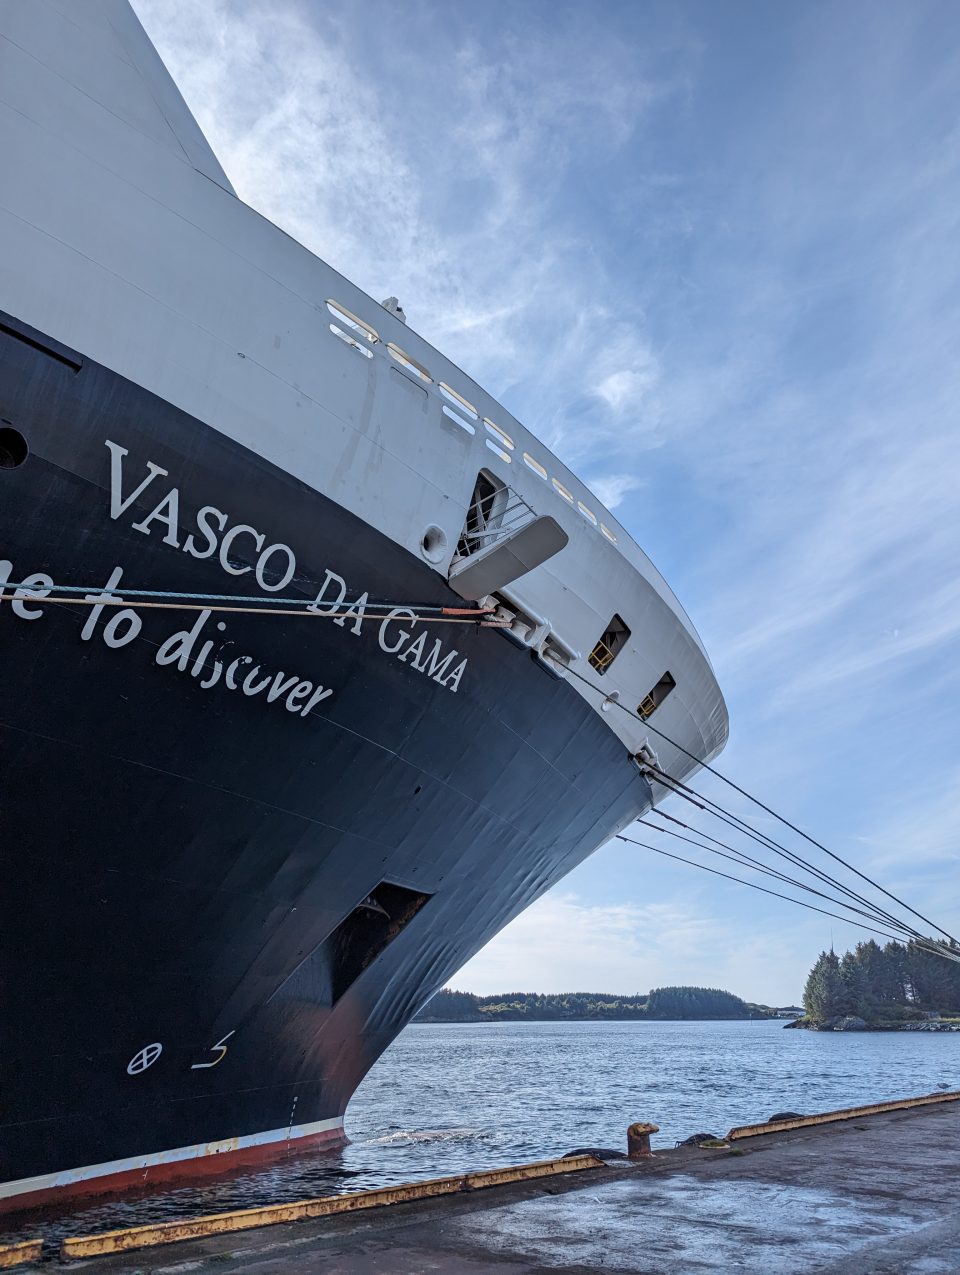 Kreuzfahrt mit Kindern Norwegen mit Nicko Cruises Teil 2 -Tromsö - Kreuzfahrt mit Kindern Erfahrungsbericht - Norwegen - Reisen mit Kindern - Erlebnisse in Norwegen - Nordkap Kreuzfahrt - Nordkap mit Kindern - Vasco da Gama